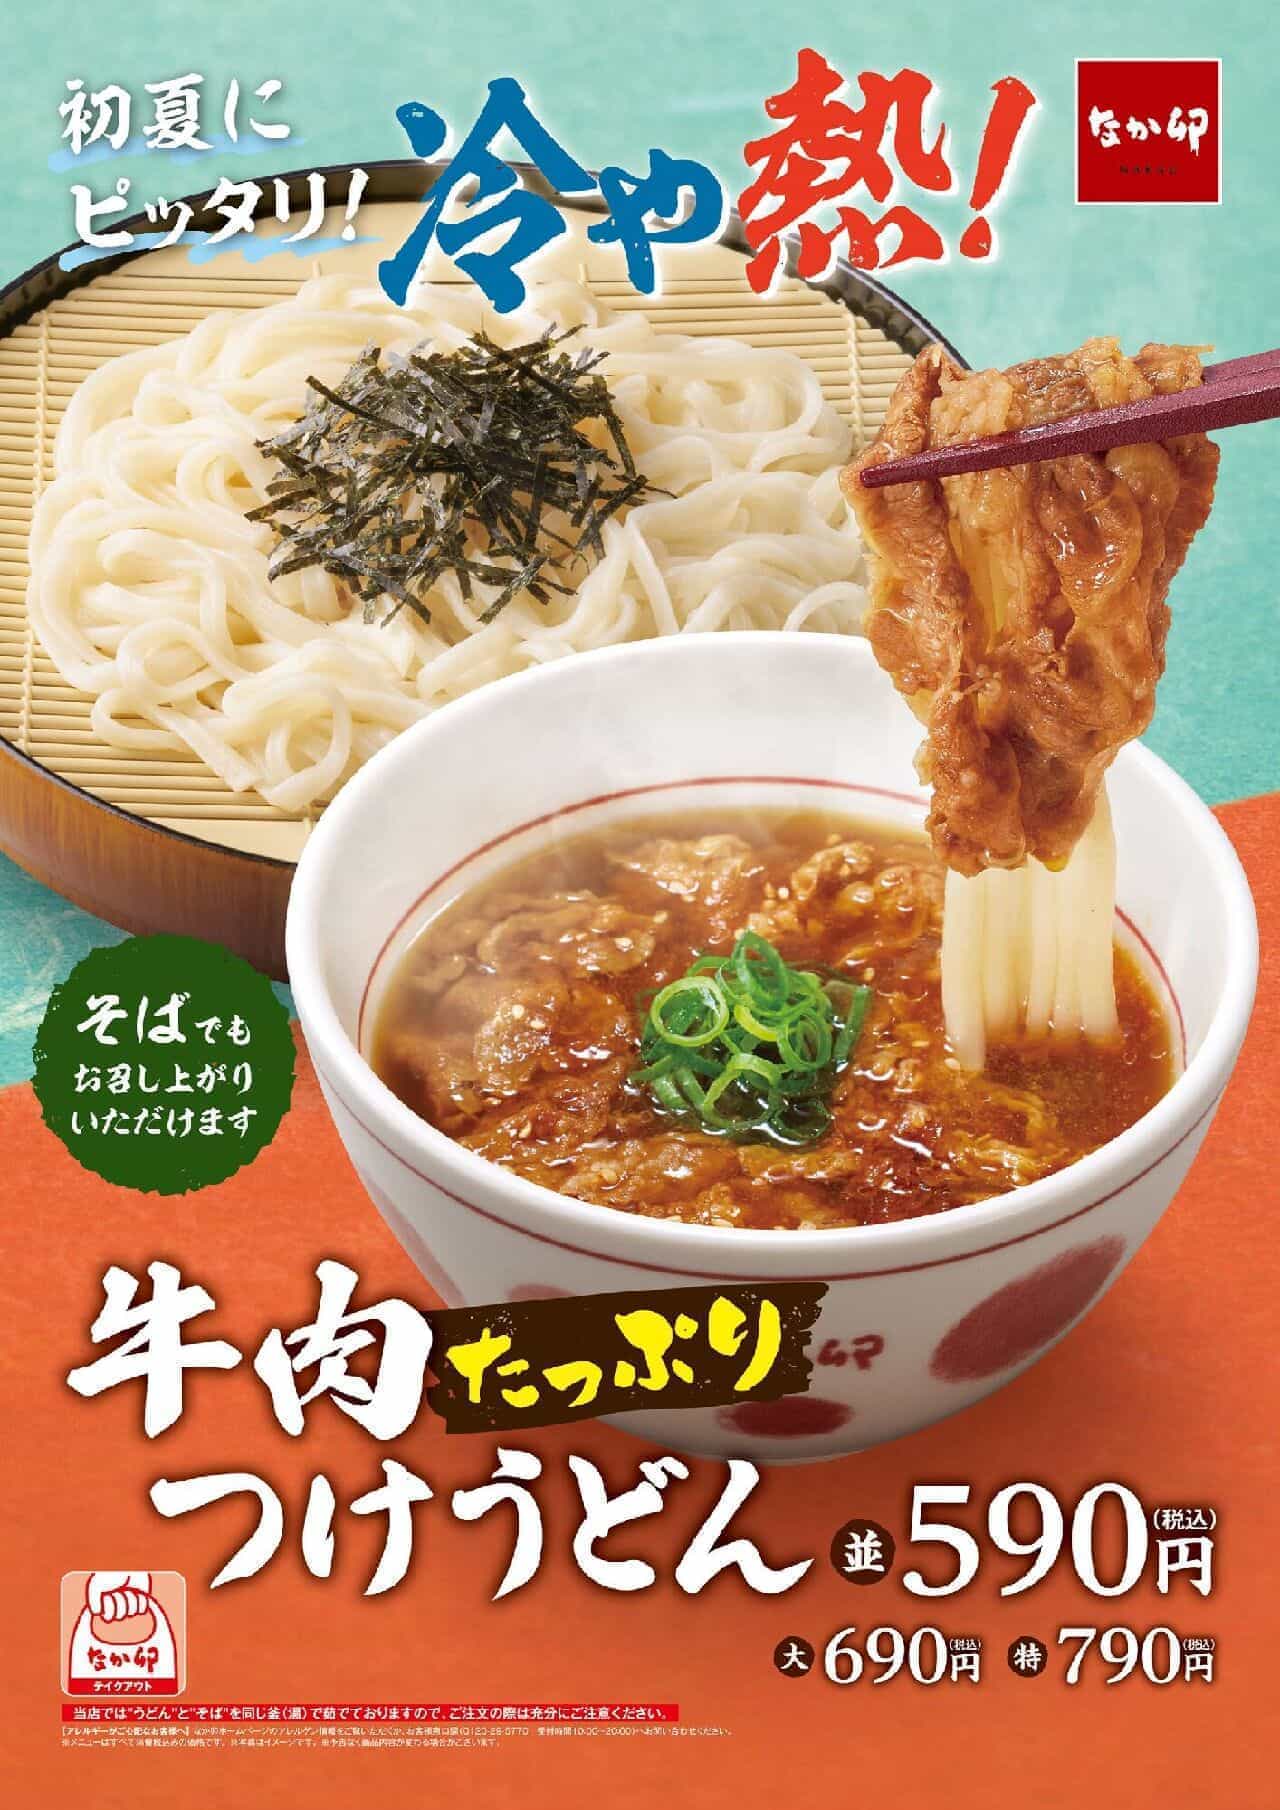 Nakau "Beef-filled Tsuke Udon" and "Umashiri Beef-filled Tsuke Udon".